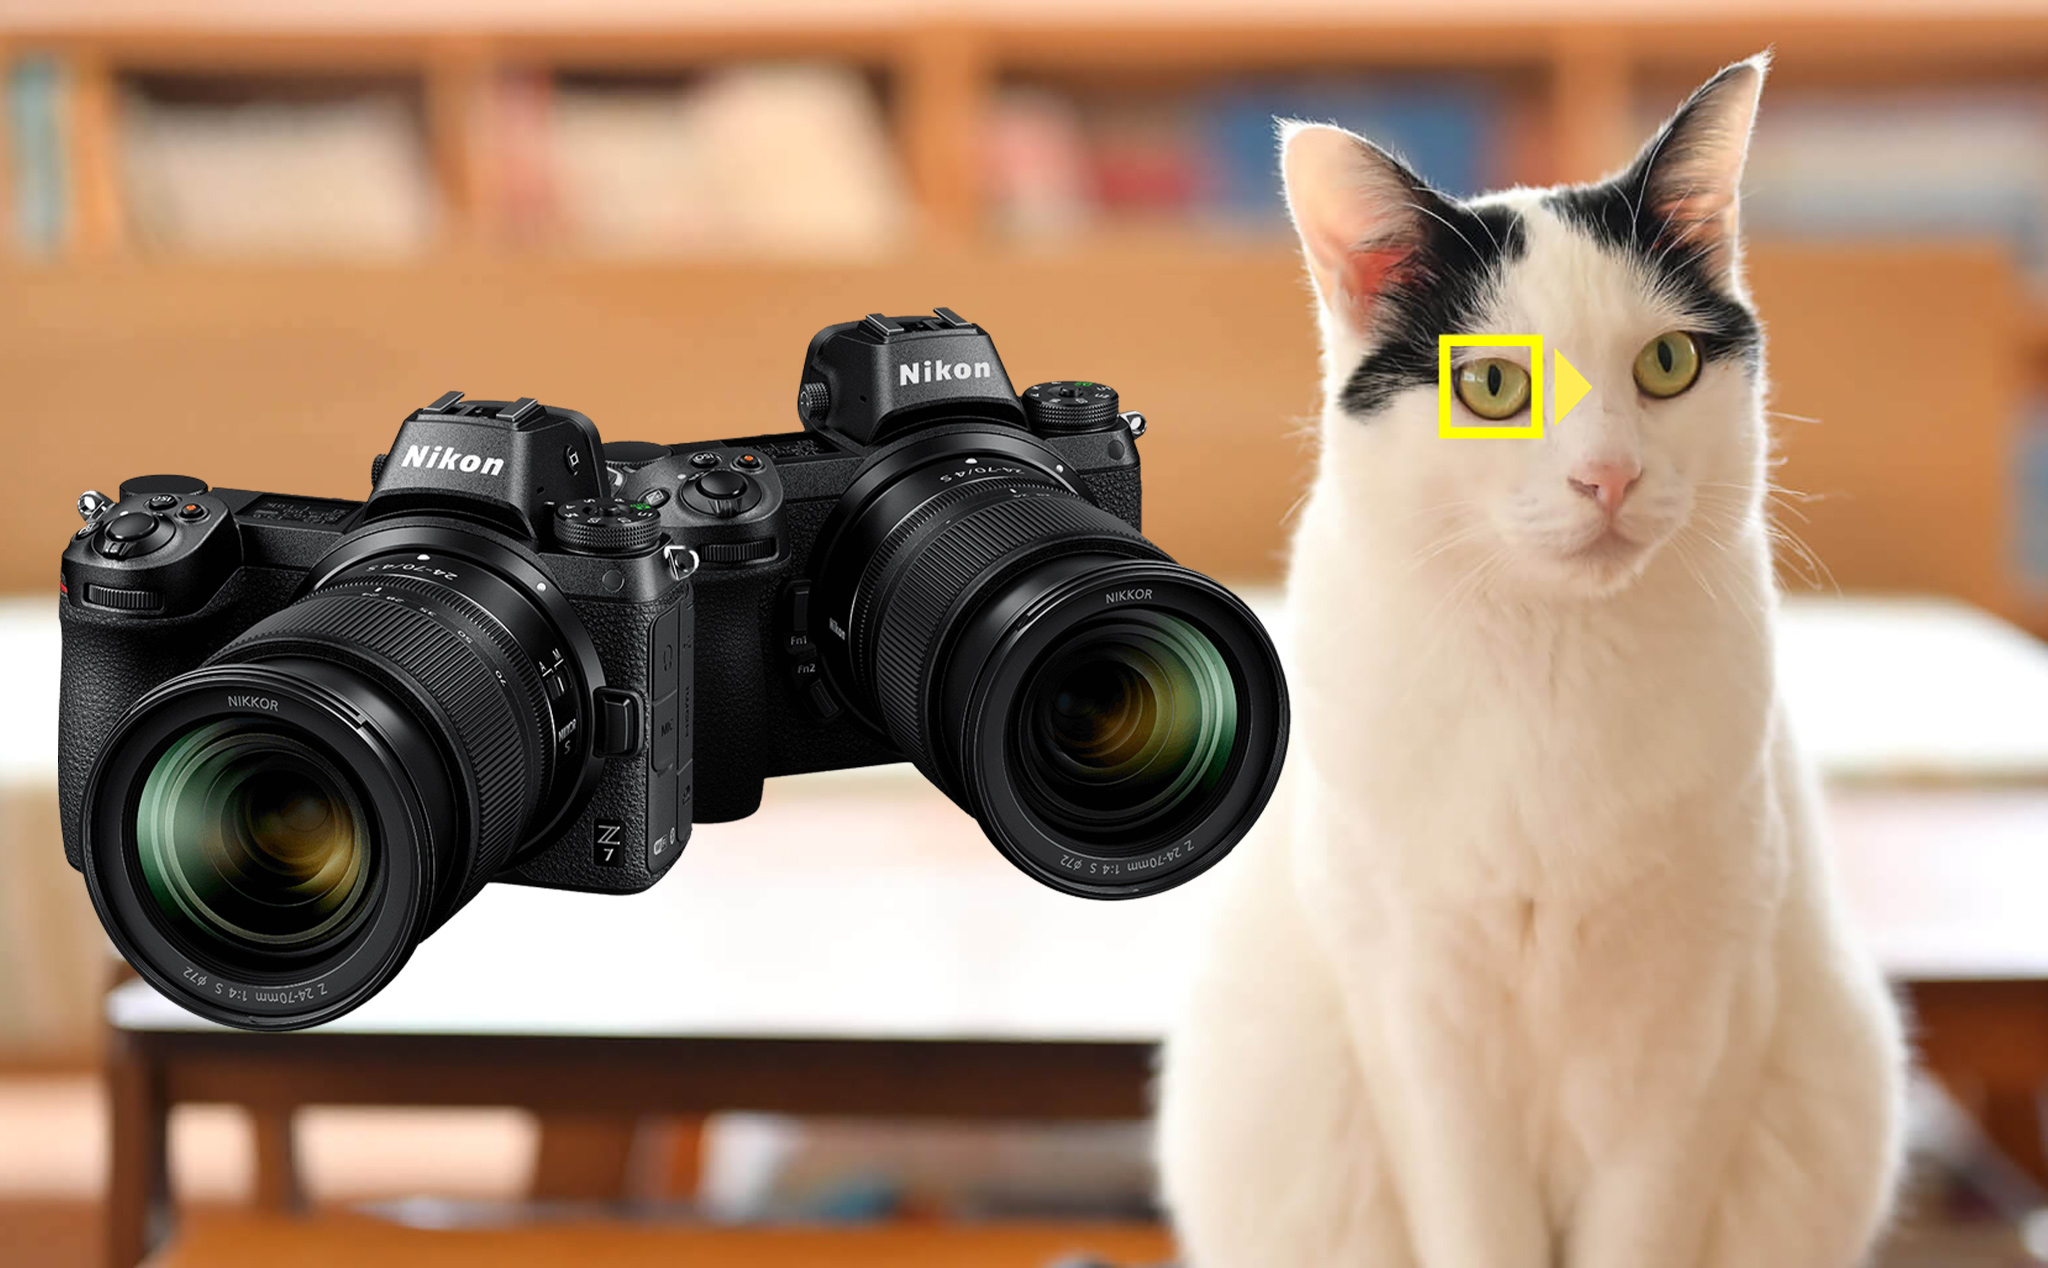 Nikon Z6/Z7 là thế hệ mới của máy ảnh DSLR, mang đến những tính năng độc đáo và tiên tiến. Nếu bạn đam mê nhiếp ảnh và muốn khám phá thế giới xung quanh bằng cách chụp ảnh đẹp, thì Nikon Z6/Z7 sẽ không làm bạn thất vọng.